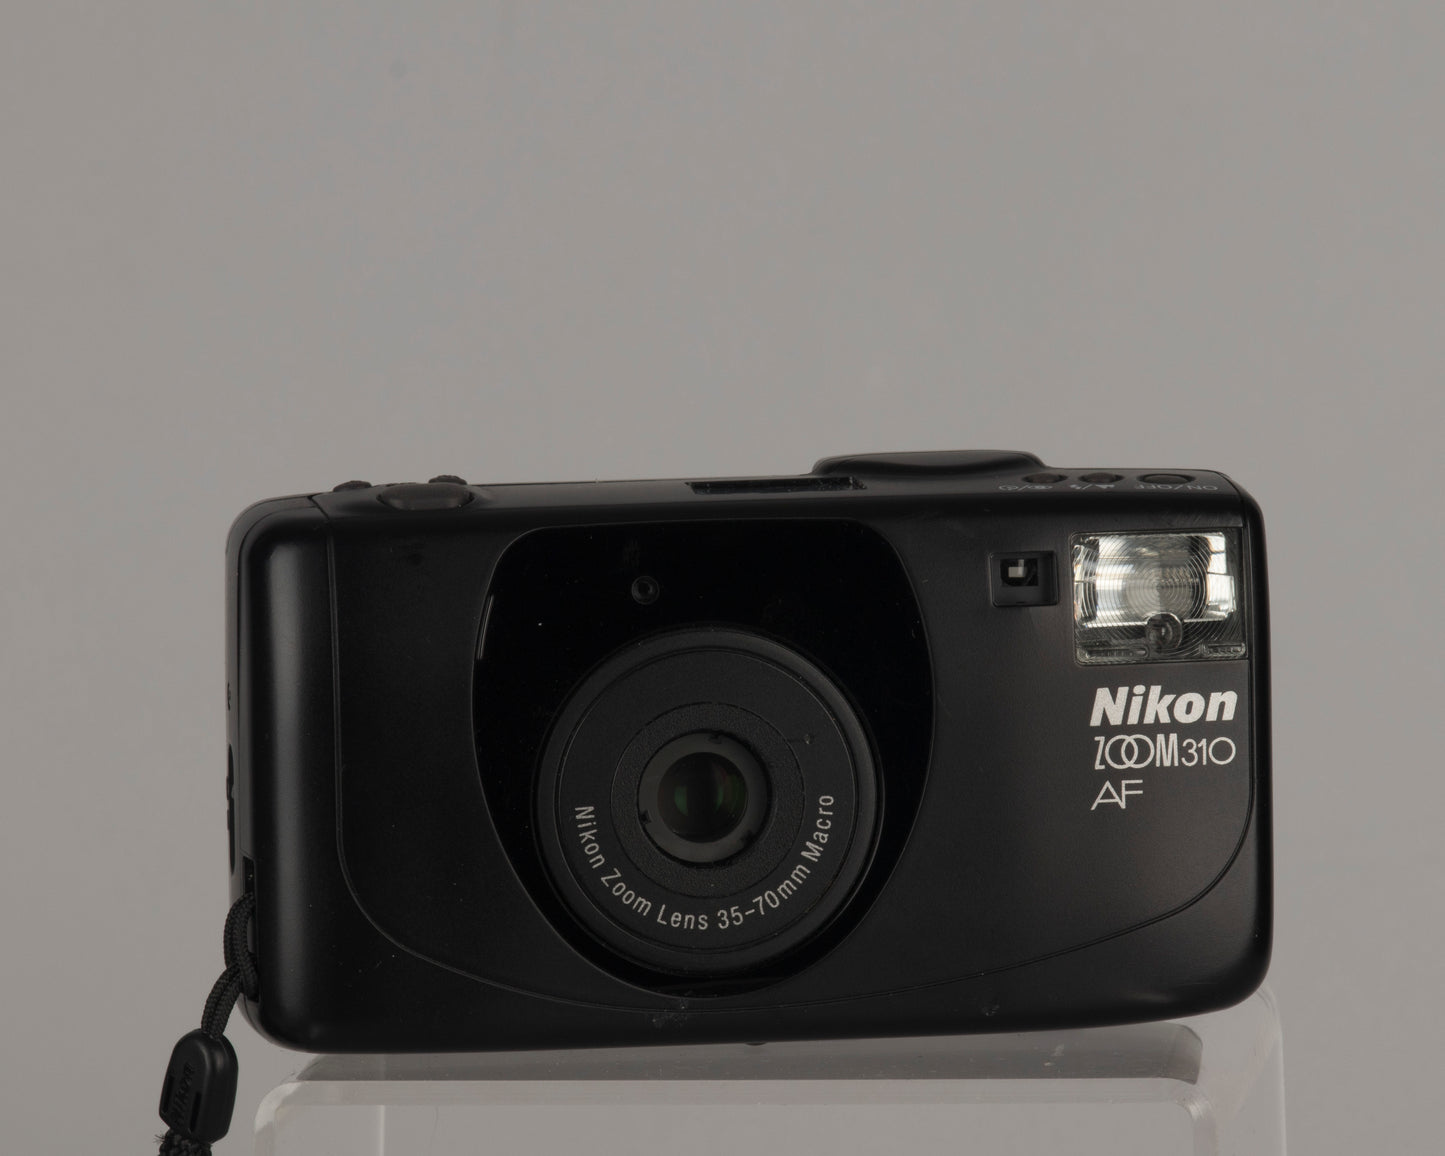 Nikon Zoom 310AF 35mm camera with case